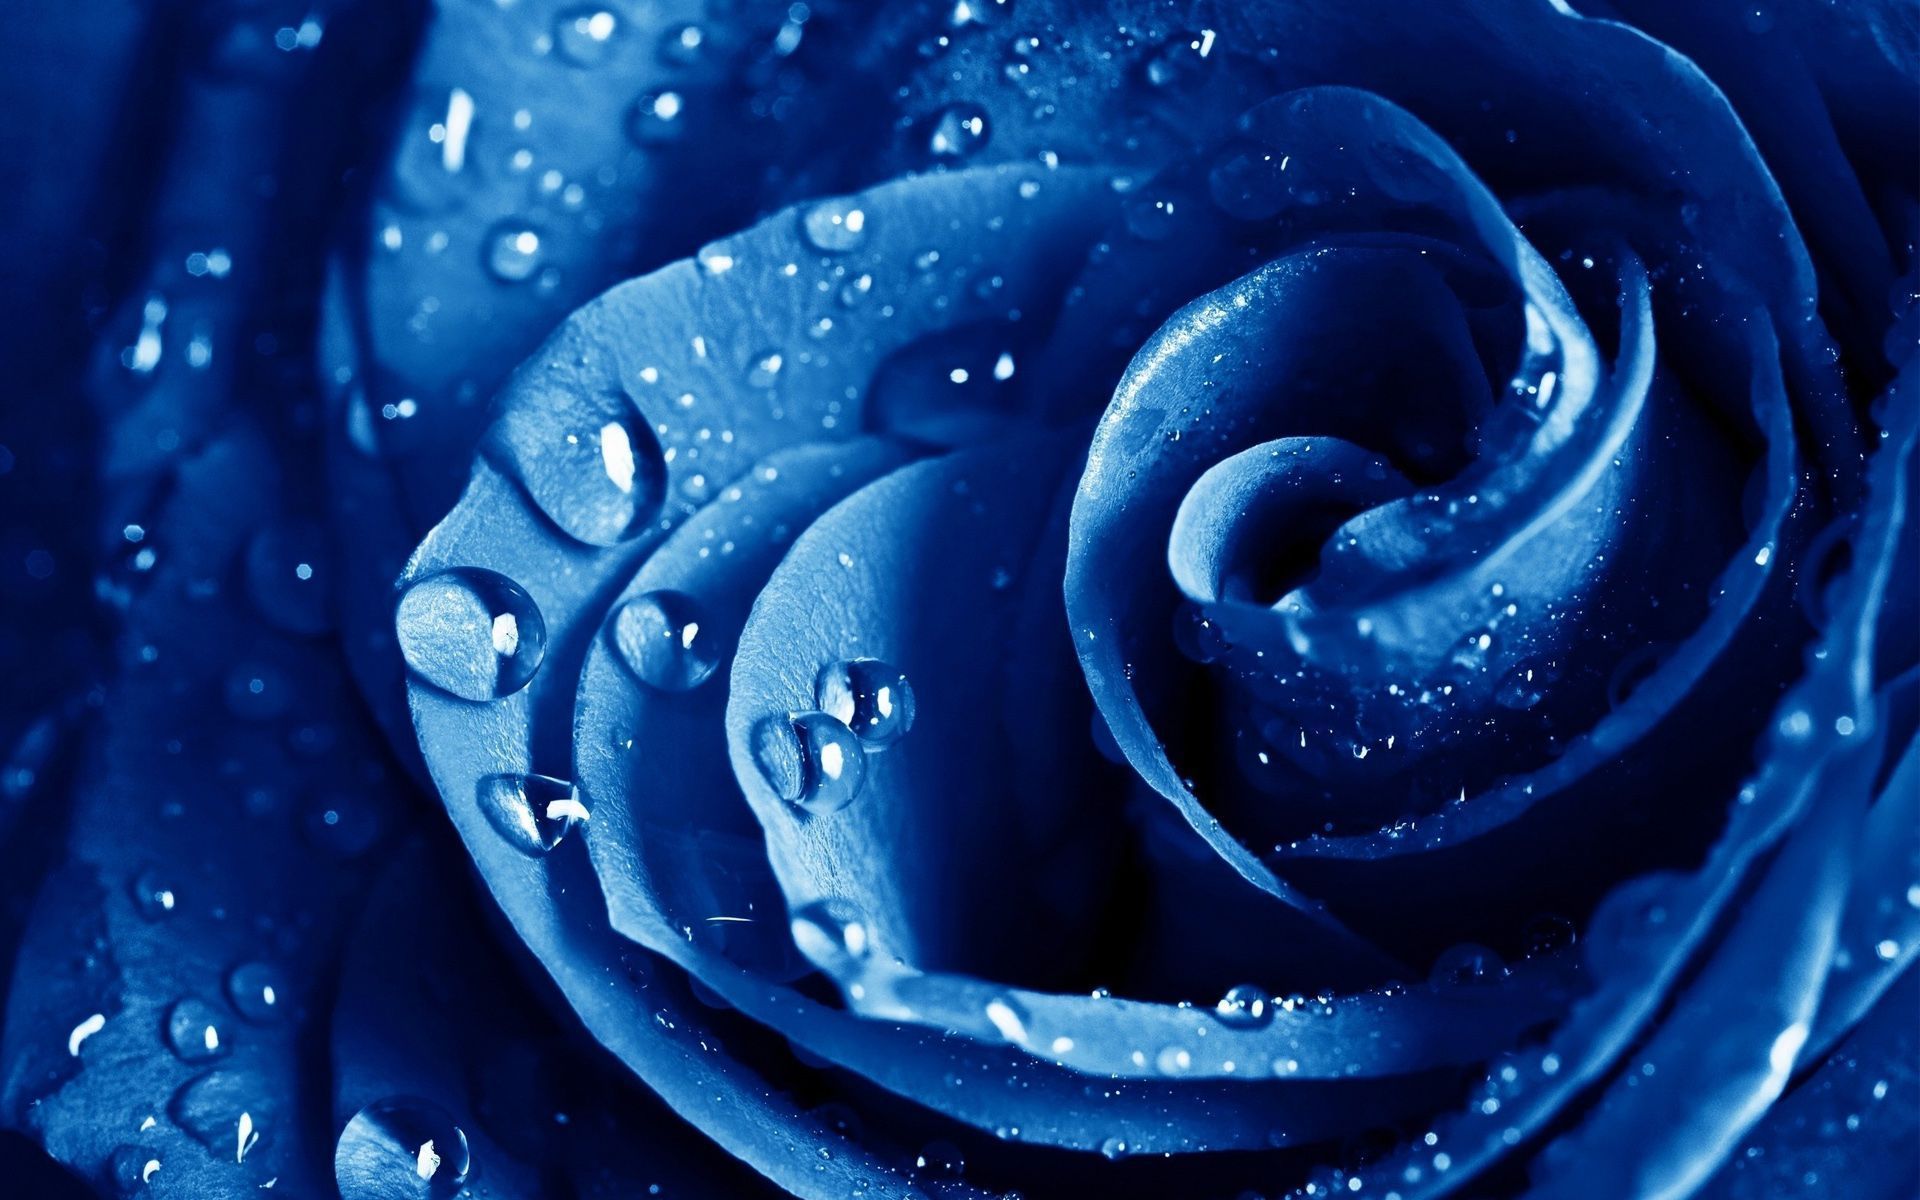 Blue Rose Desktop Wallpaper, Blue Rose Images Free Cool Backgrounds